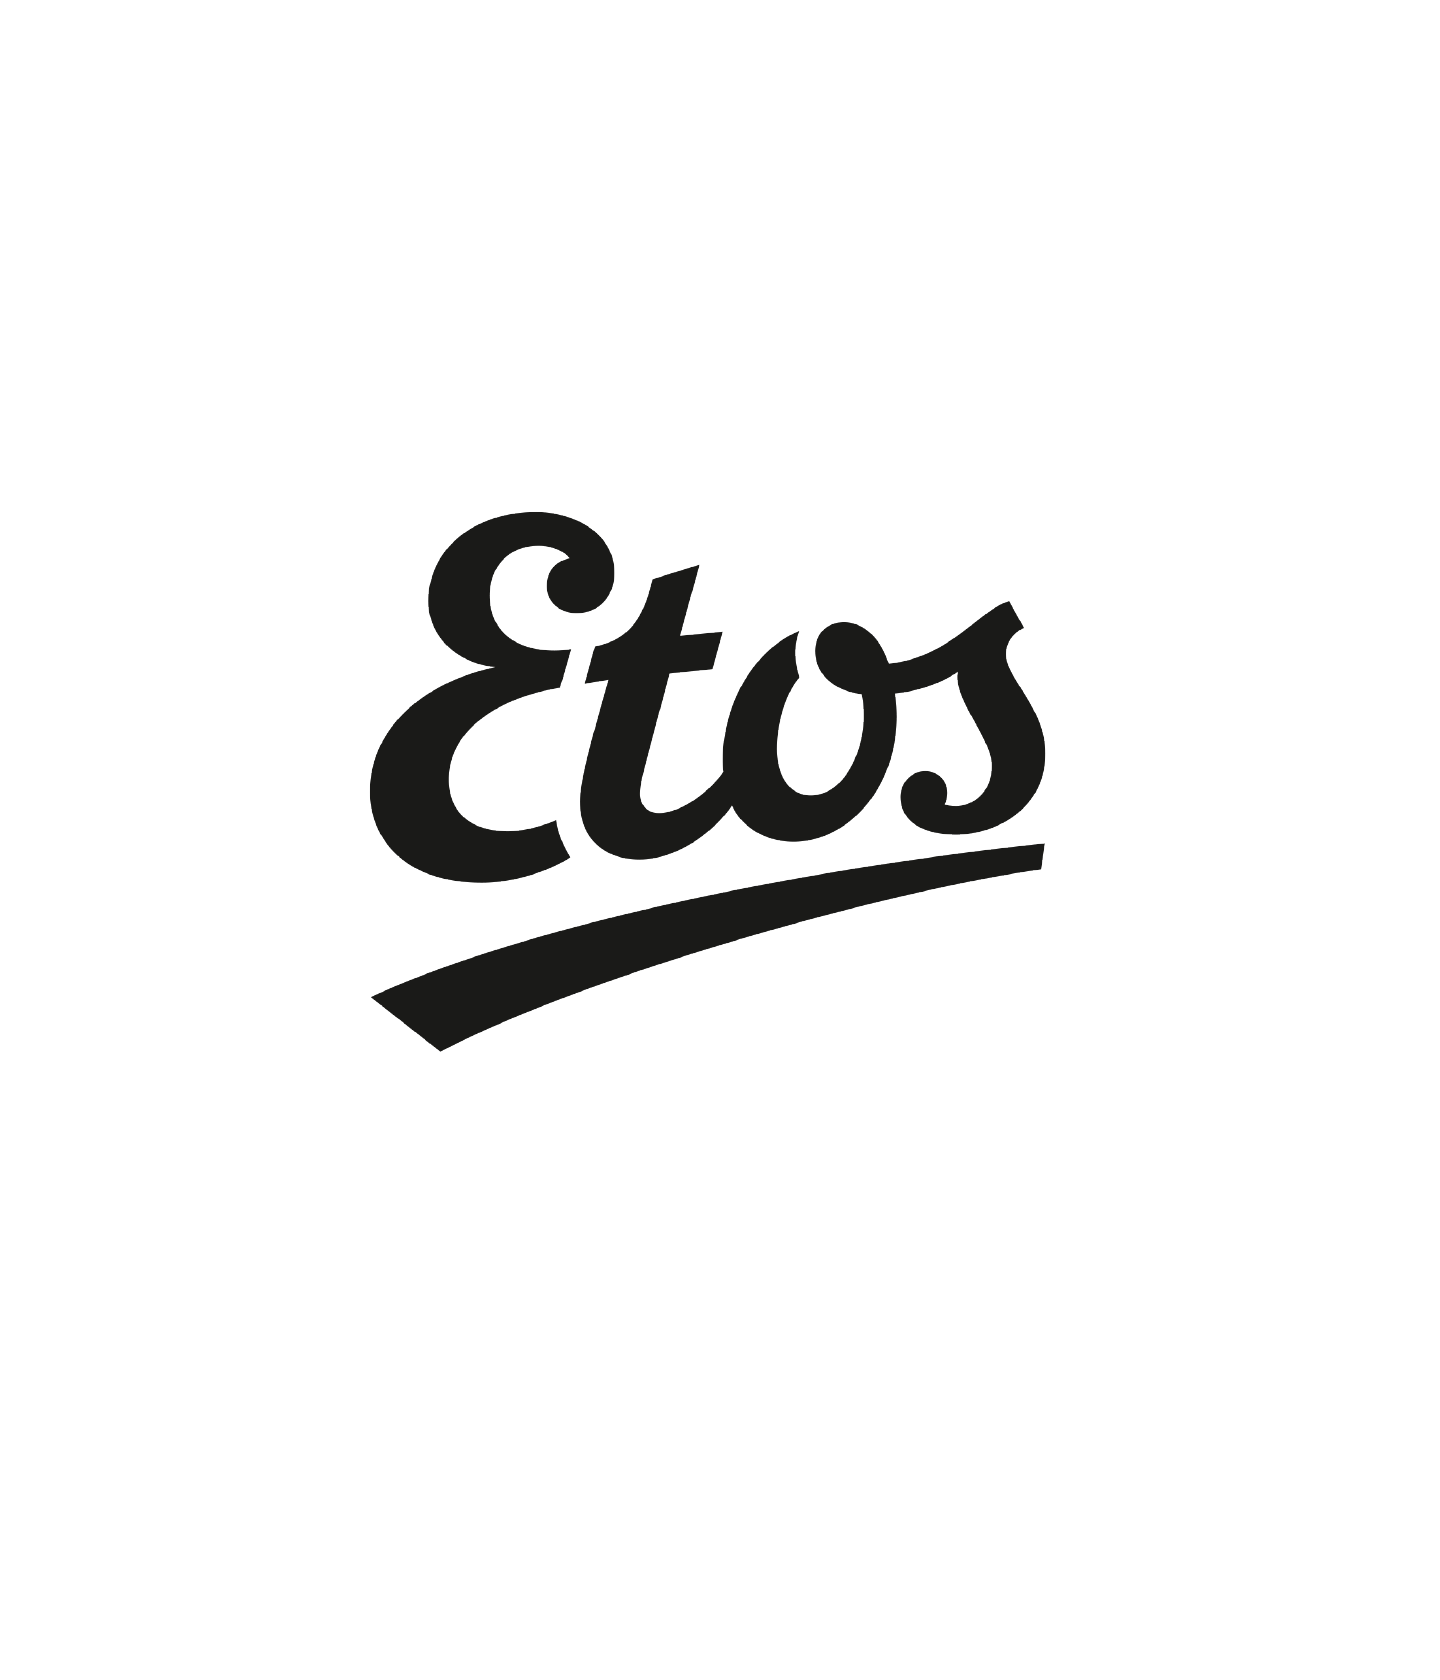 Logo Etos